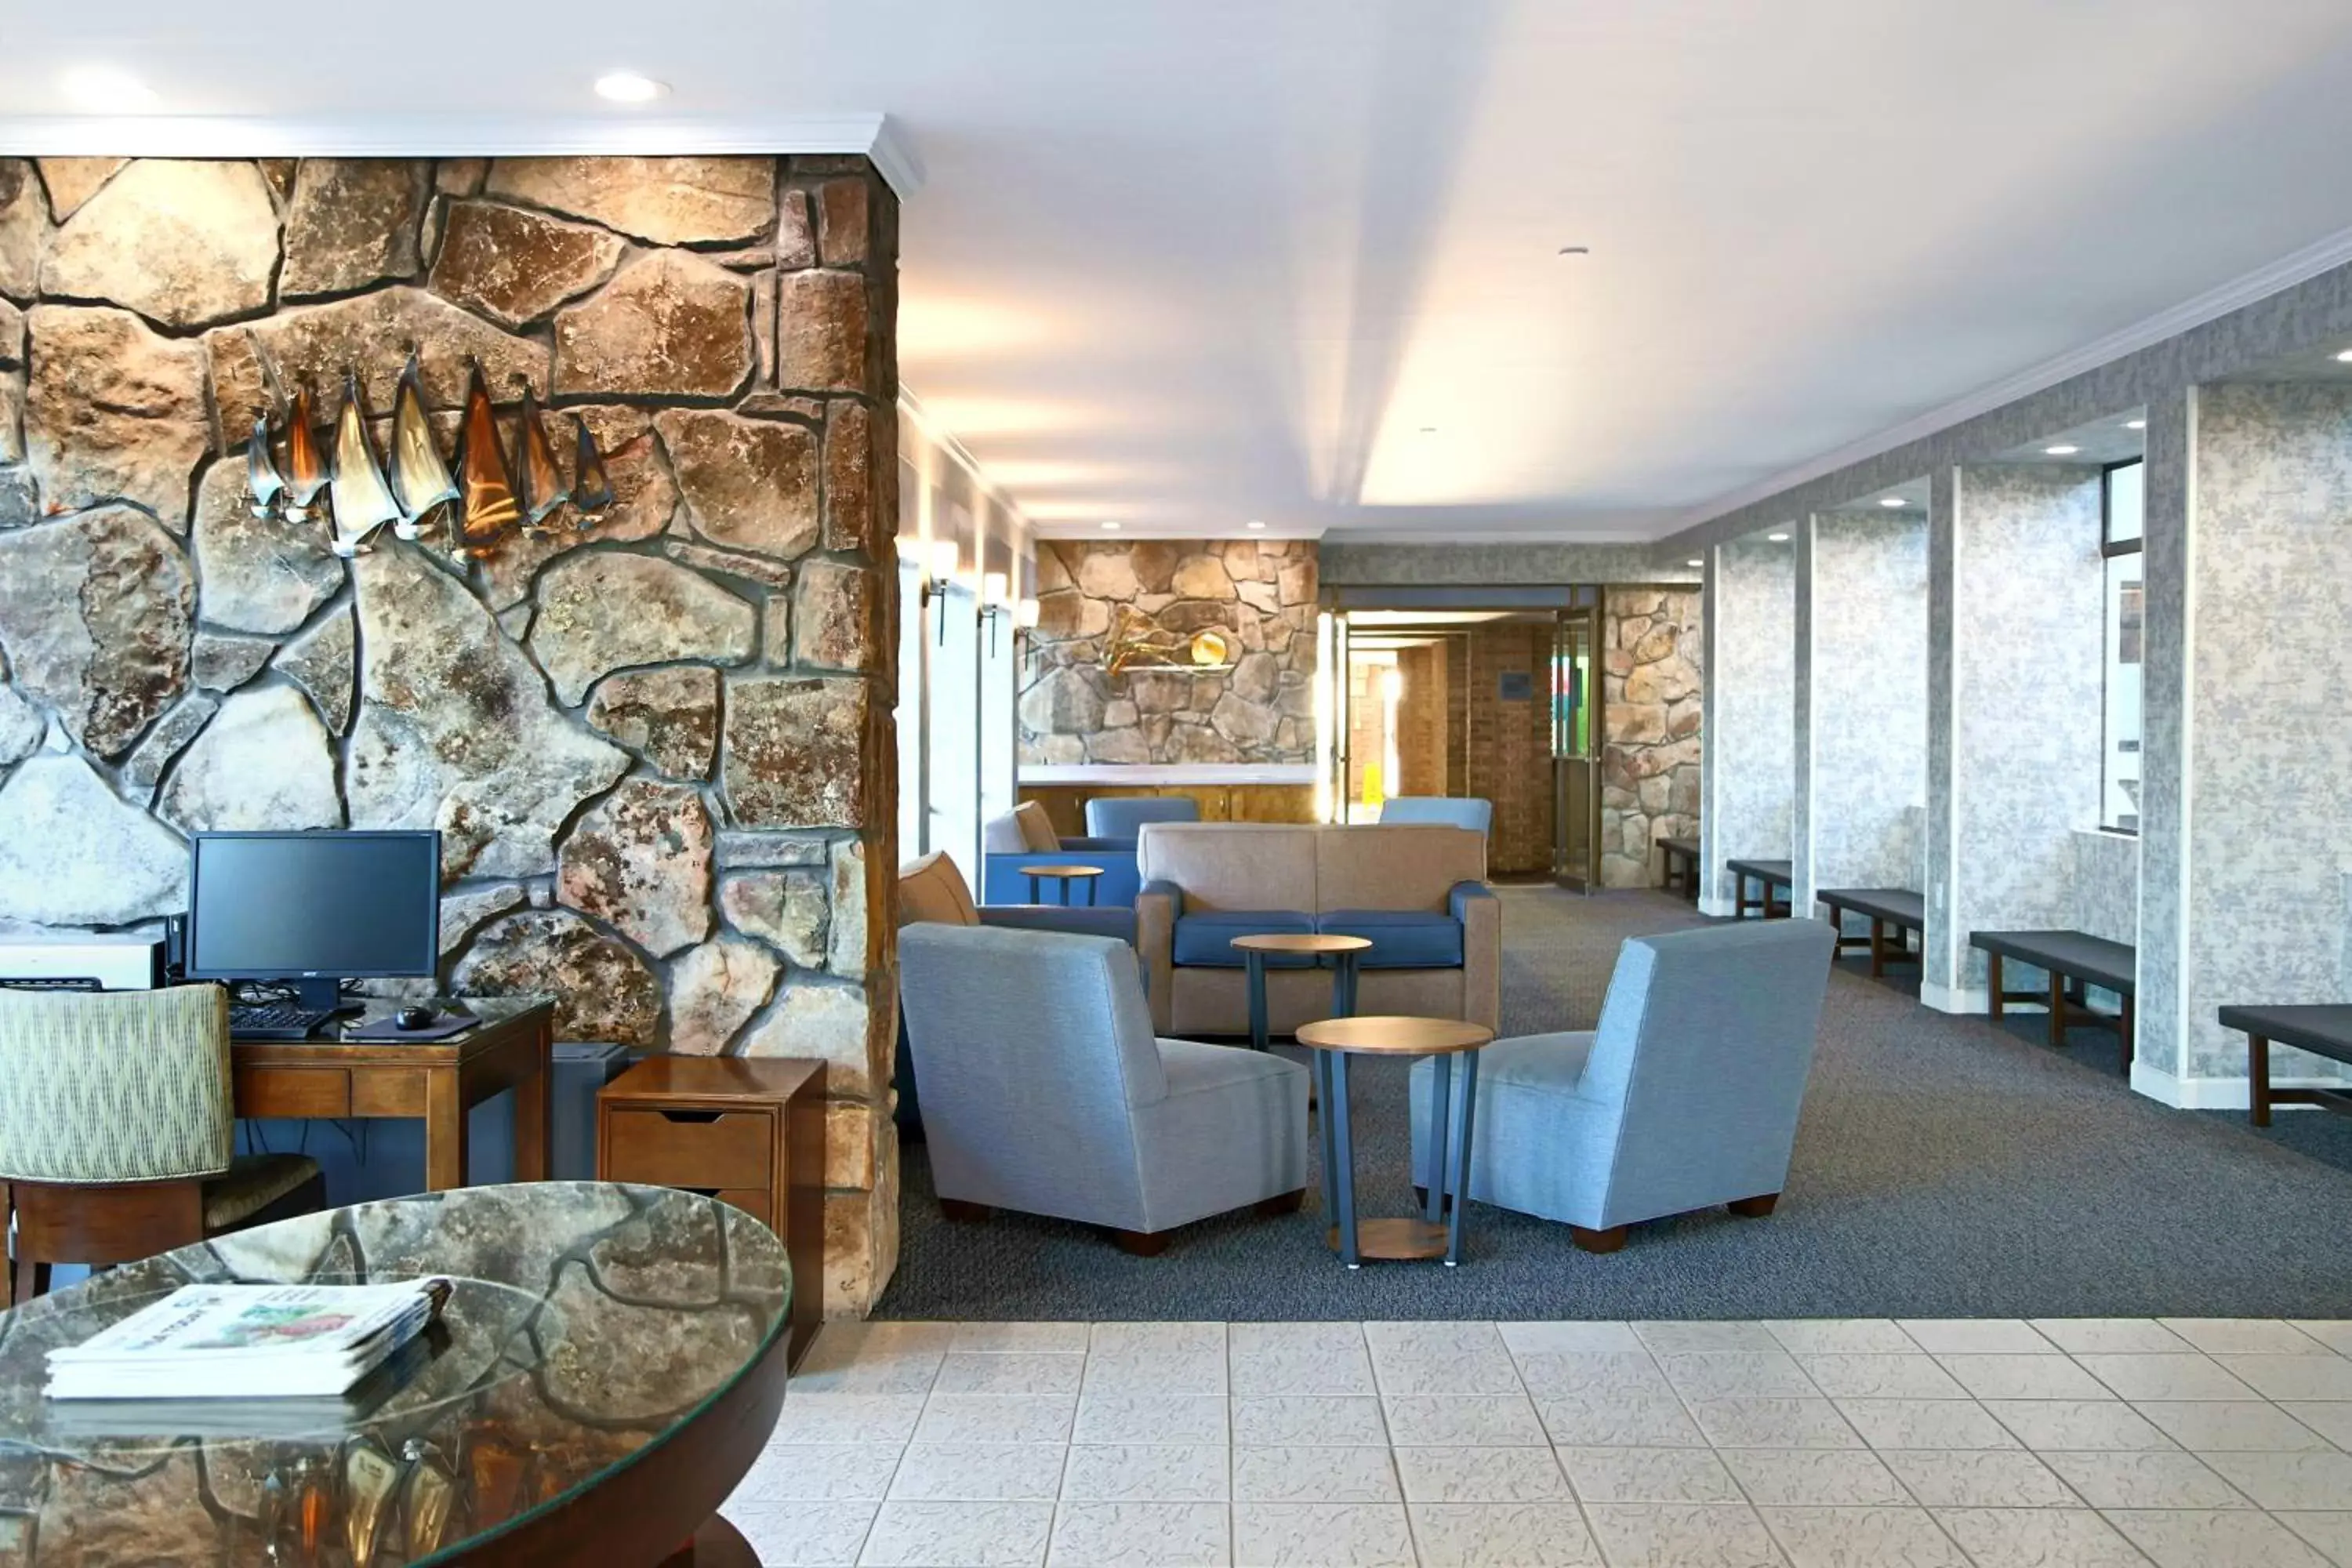 Lobby or reception, Lobby/Reception in Quality Inn Boardwalk